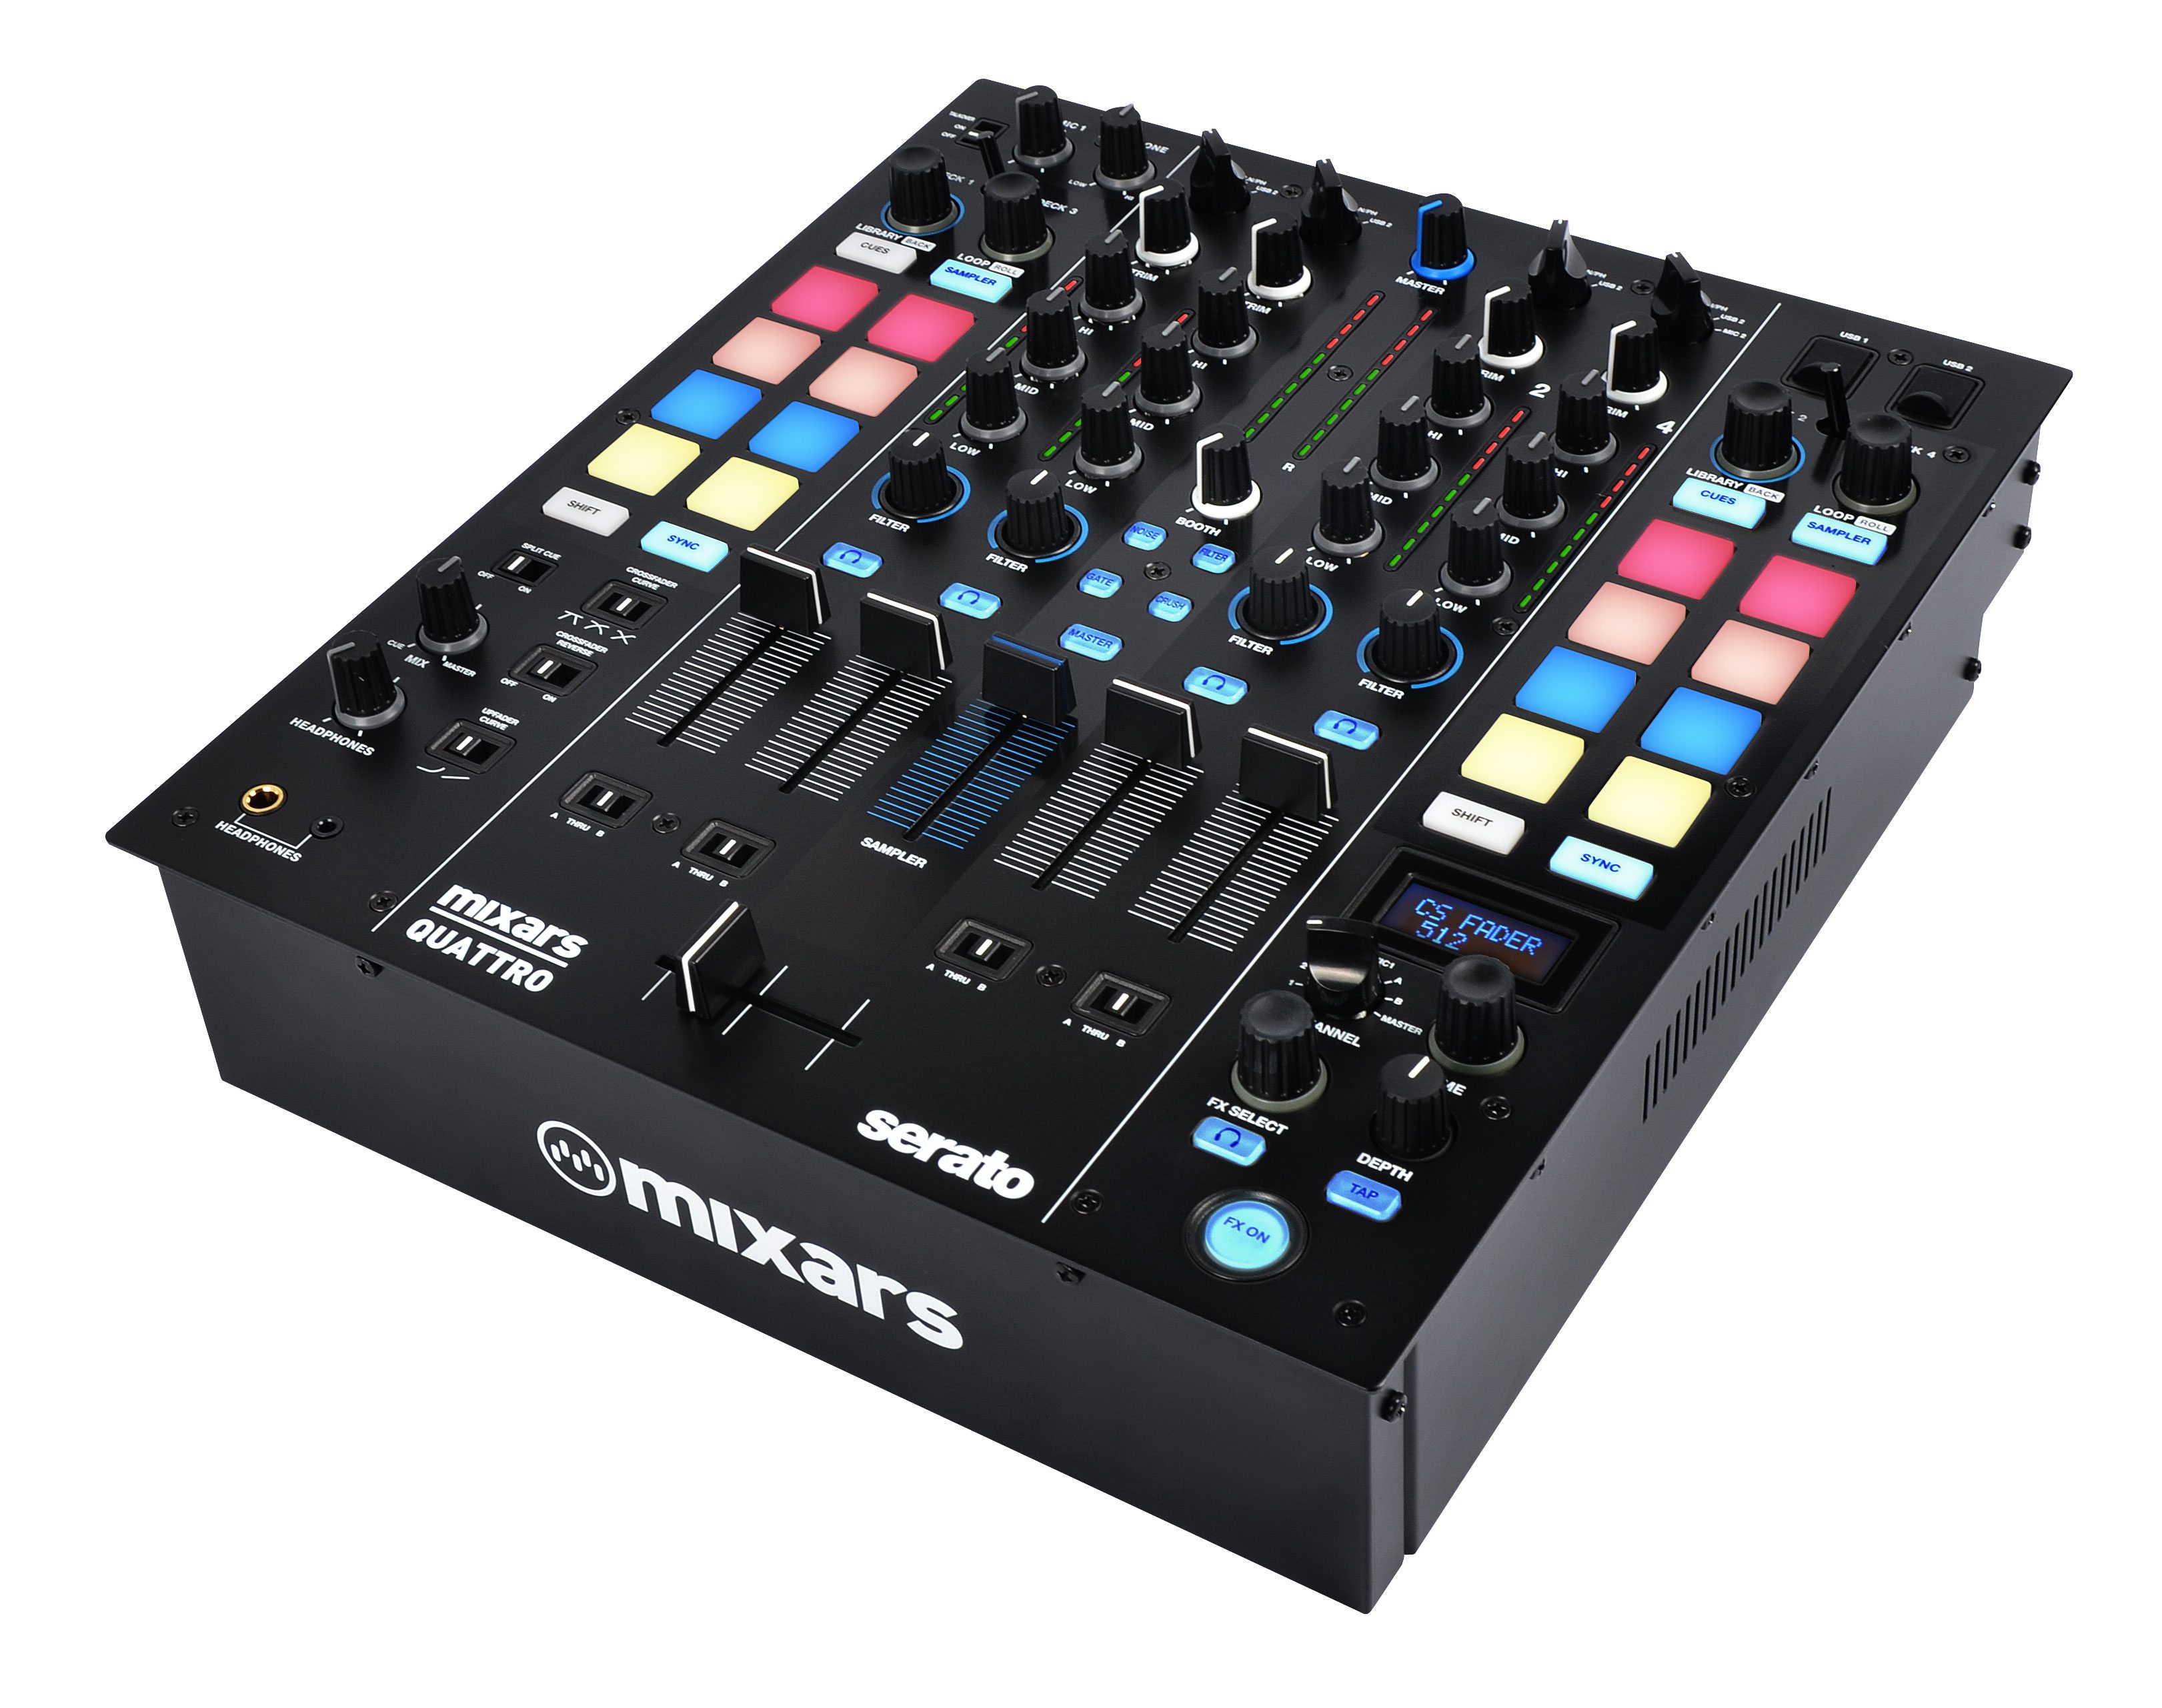 Nuevo mixer Mixars QUATTRO compatible con Serato DJ